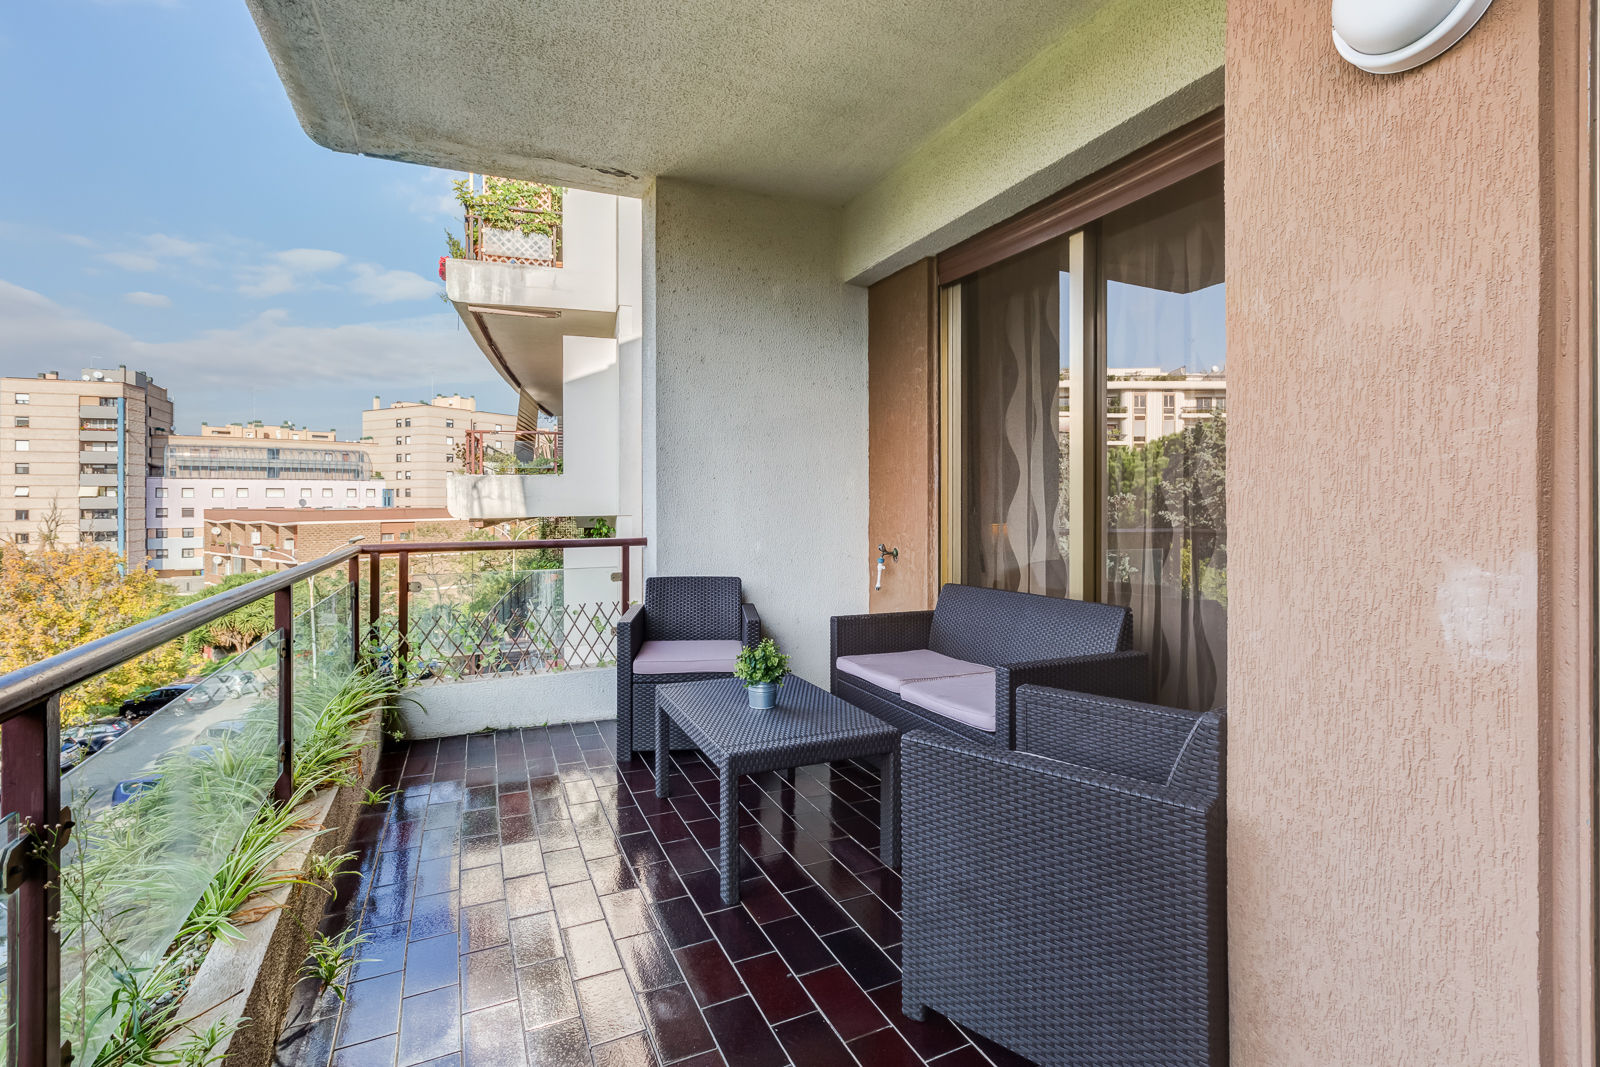 Appartamento Laurentina - Roma, Luca Tranquilli - Fotografo Luca Tranquilli - Fotografo Modern balcony, veranda & terrace